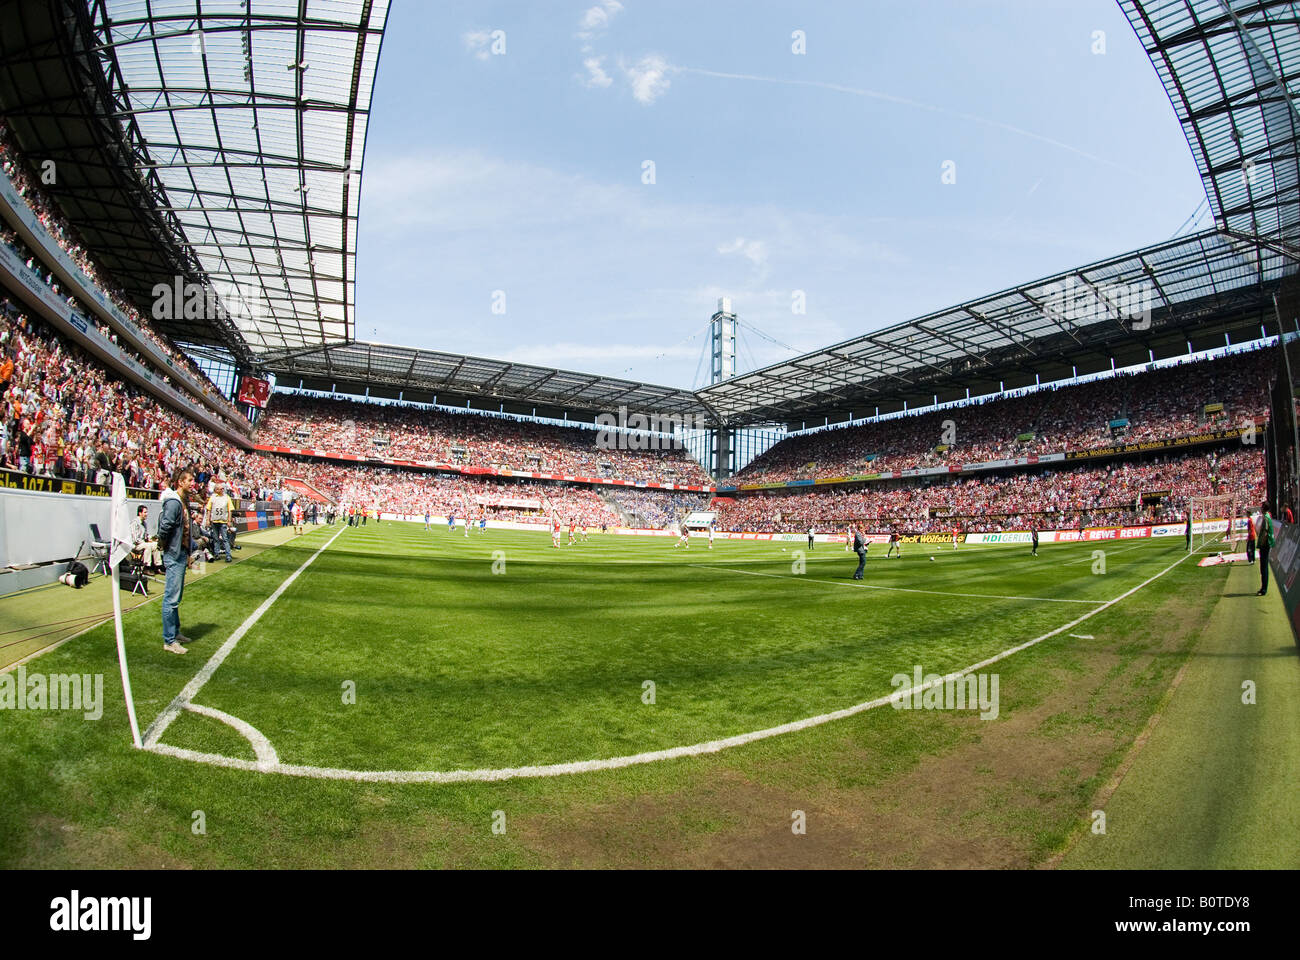 Angle dans le stade de football avant le coup d'envoi, Cologne, Allemagne Banque D'Images